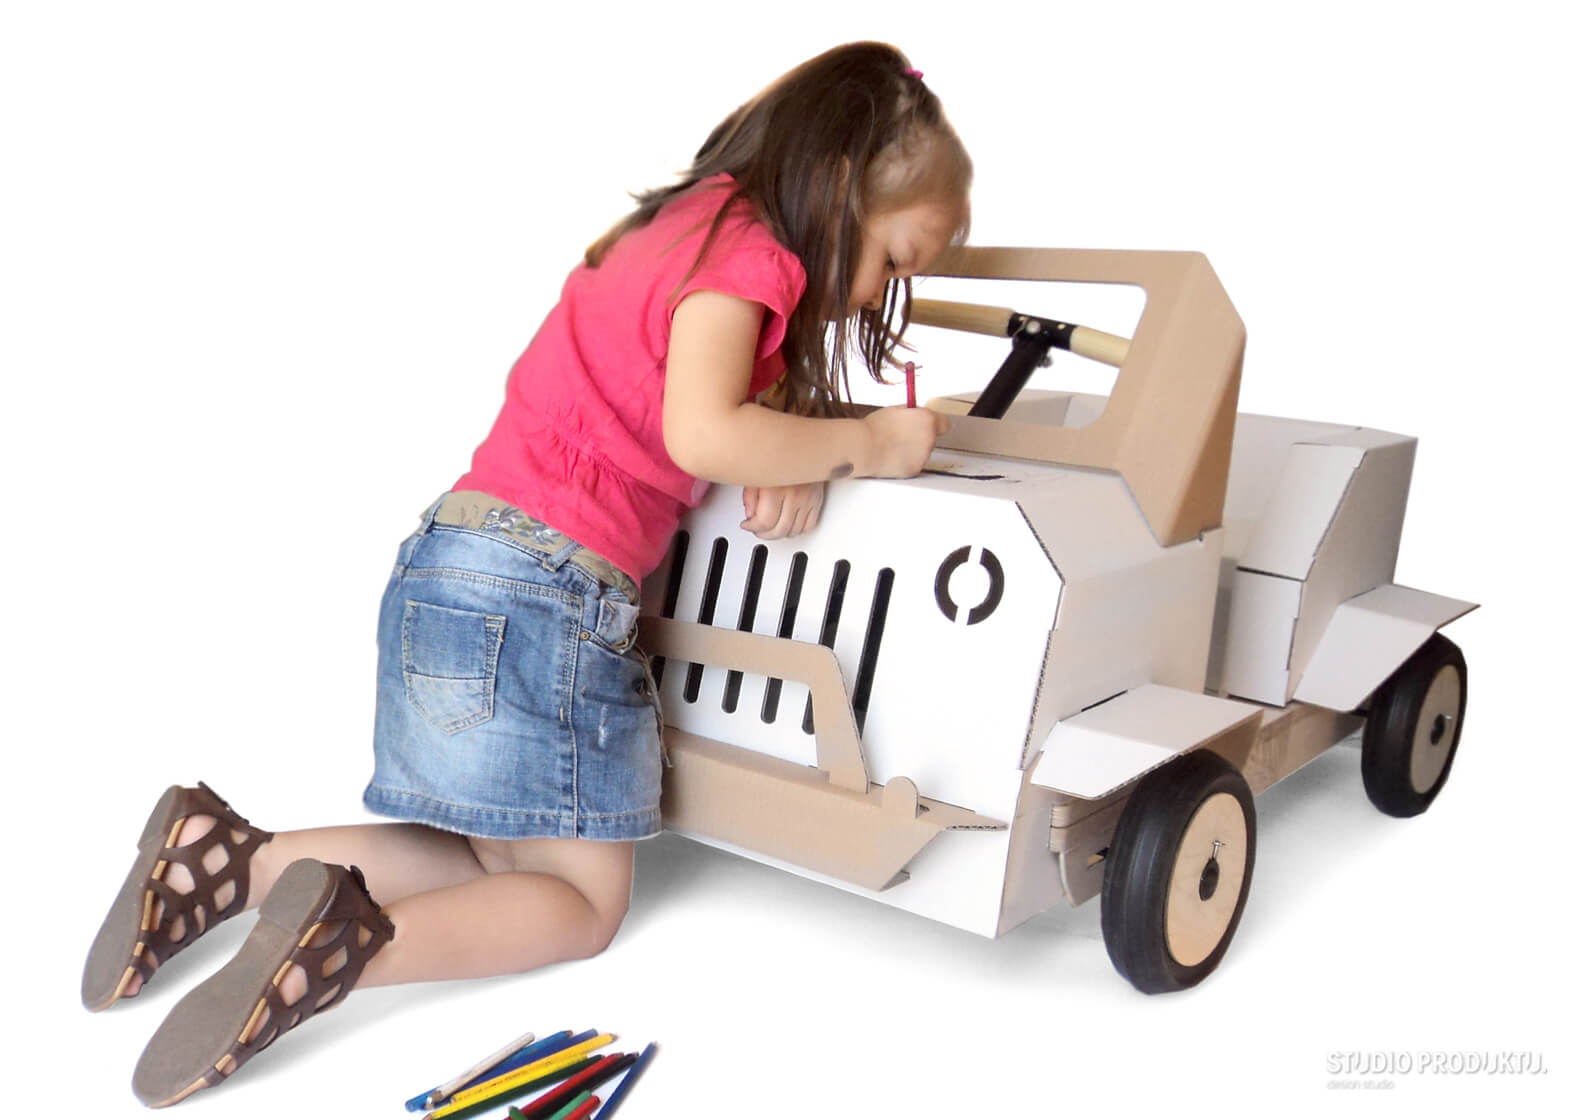 projekt-wzornictwa-przemyslowego-nowy-produktukt-projekt-zabawki-wielofunkcyjnej-dla-dzieci-projekt-pojazdu-wielofunkcyjnego_3